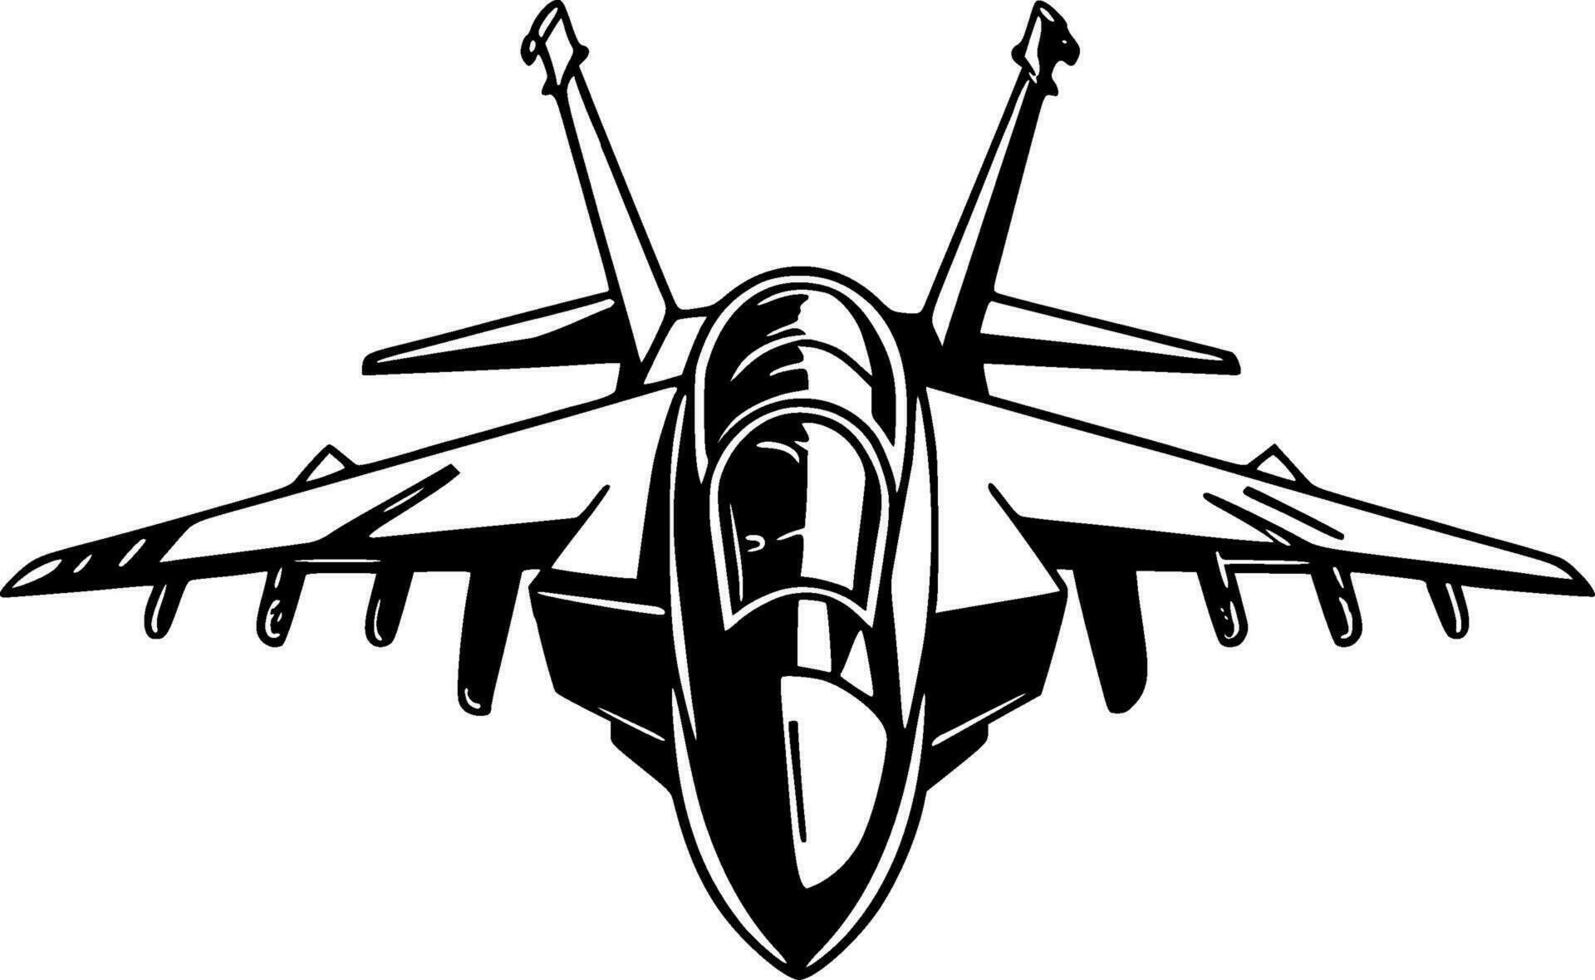 kämpe jet - svart och vit isolerat ikon - vektor illustration